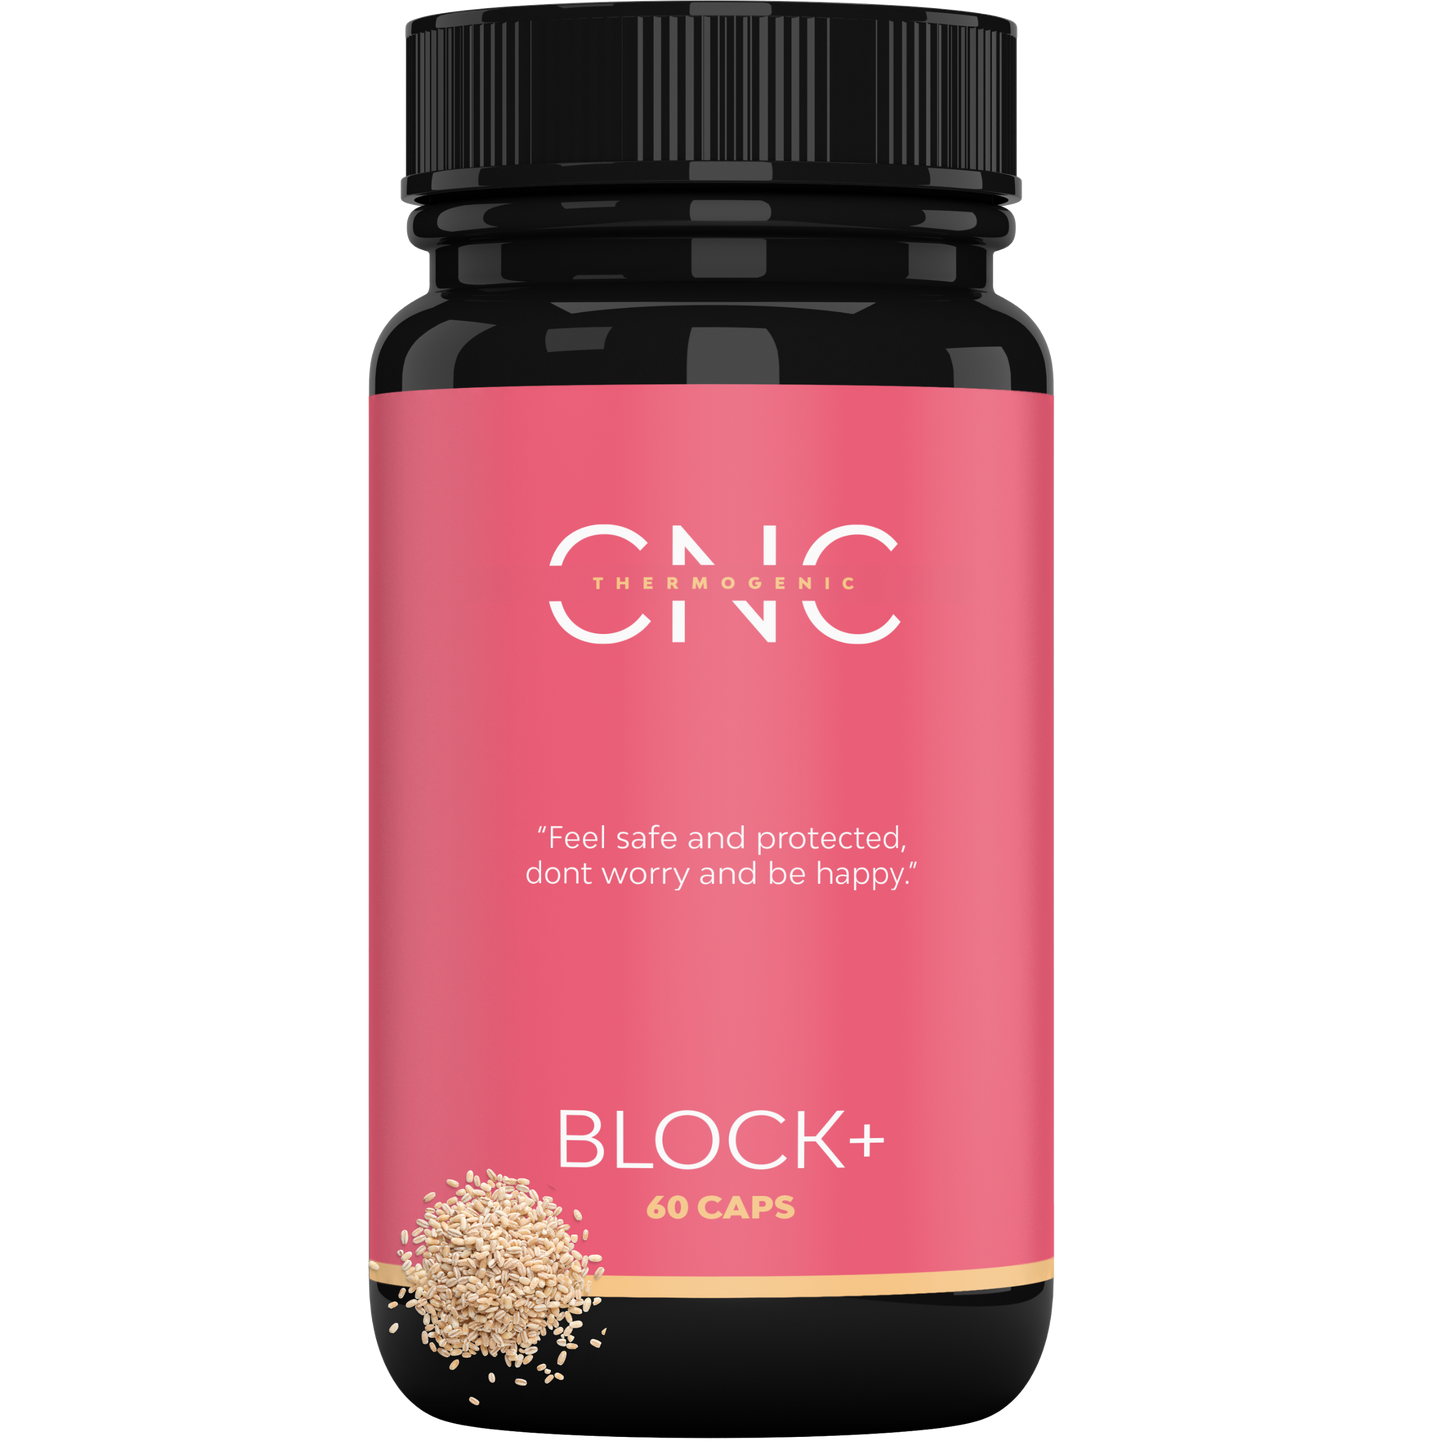 L-Carnitina CARNIPURE® Bruciagrassi BLOCK+ | Bruciagrassi + Carb Blocker 90% + Antiossidante + Protettore gastrointestinale 